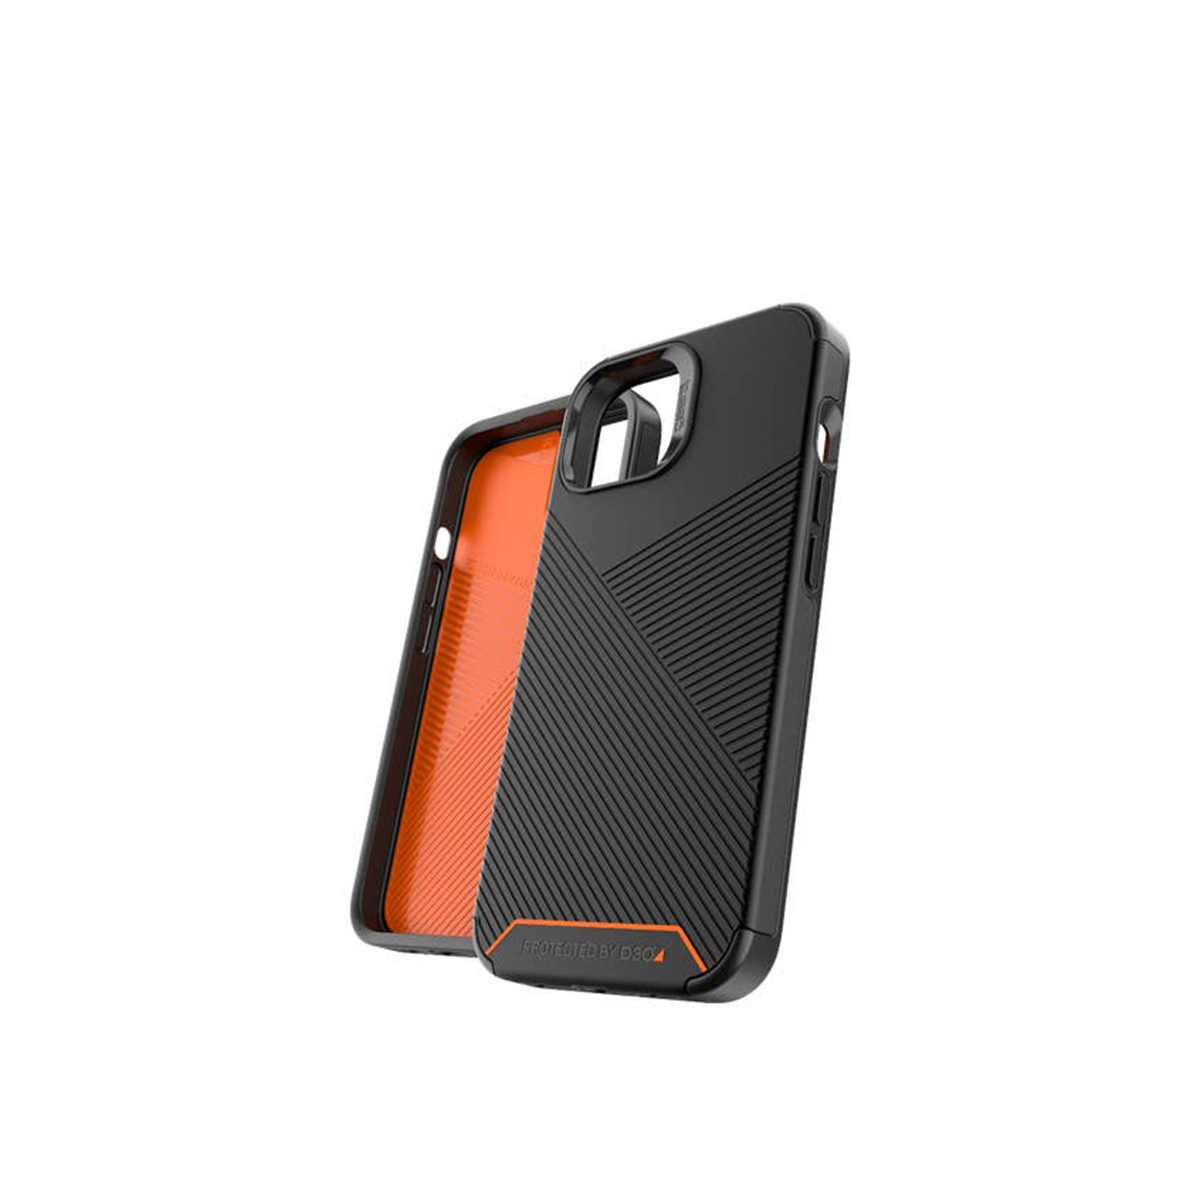 Ốp lưng Gear4 D3O Denali Snap cho Iphone 13, 13 pro, 13 pro max